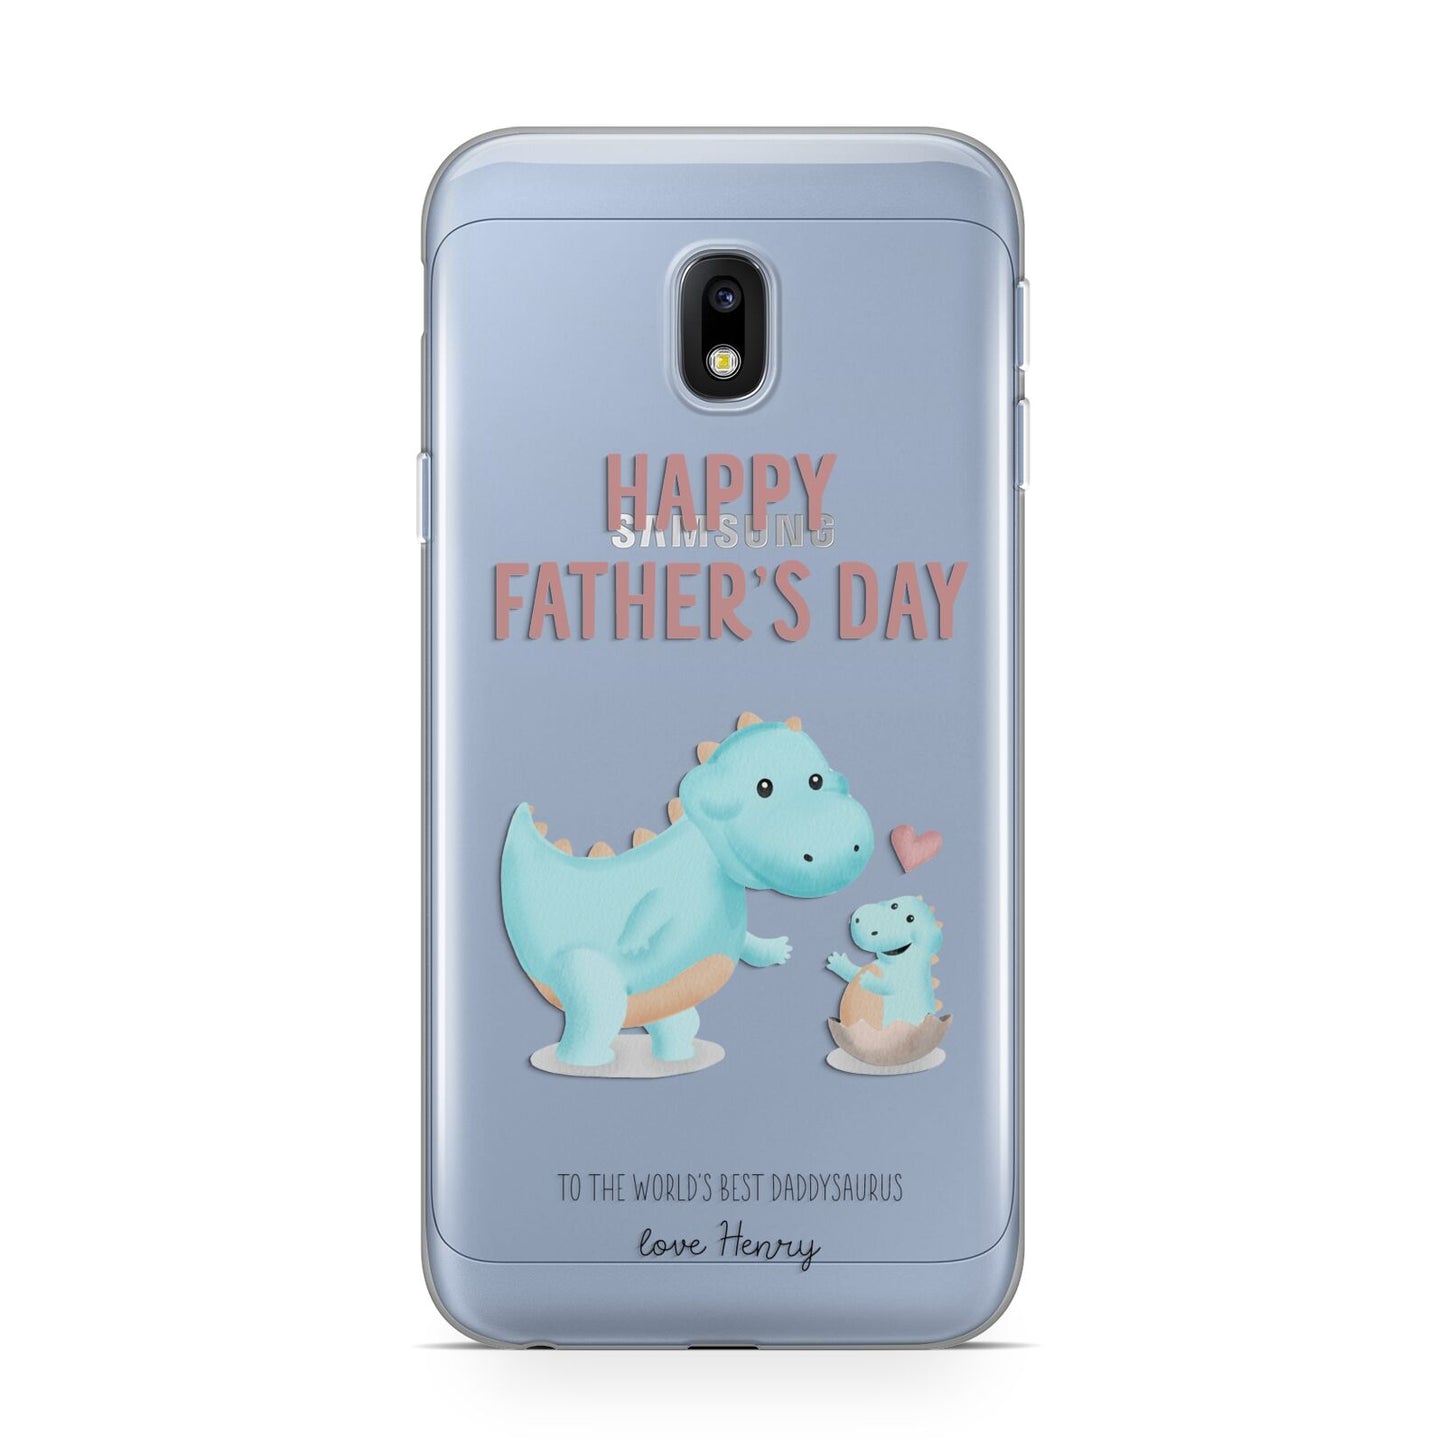 Happy Fathers Day Daddysaurus Samsung Galaxy J3 2017 Case